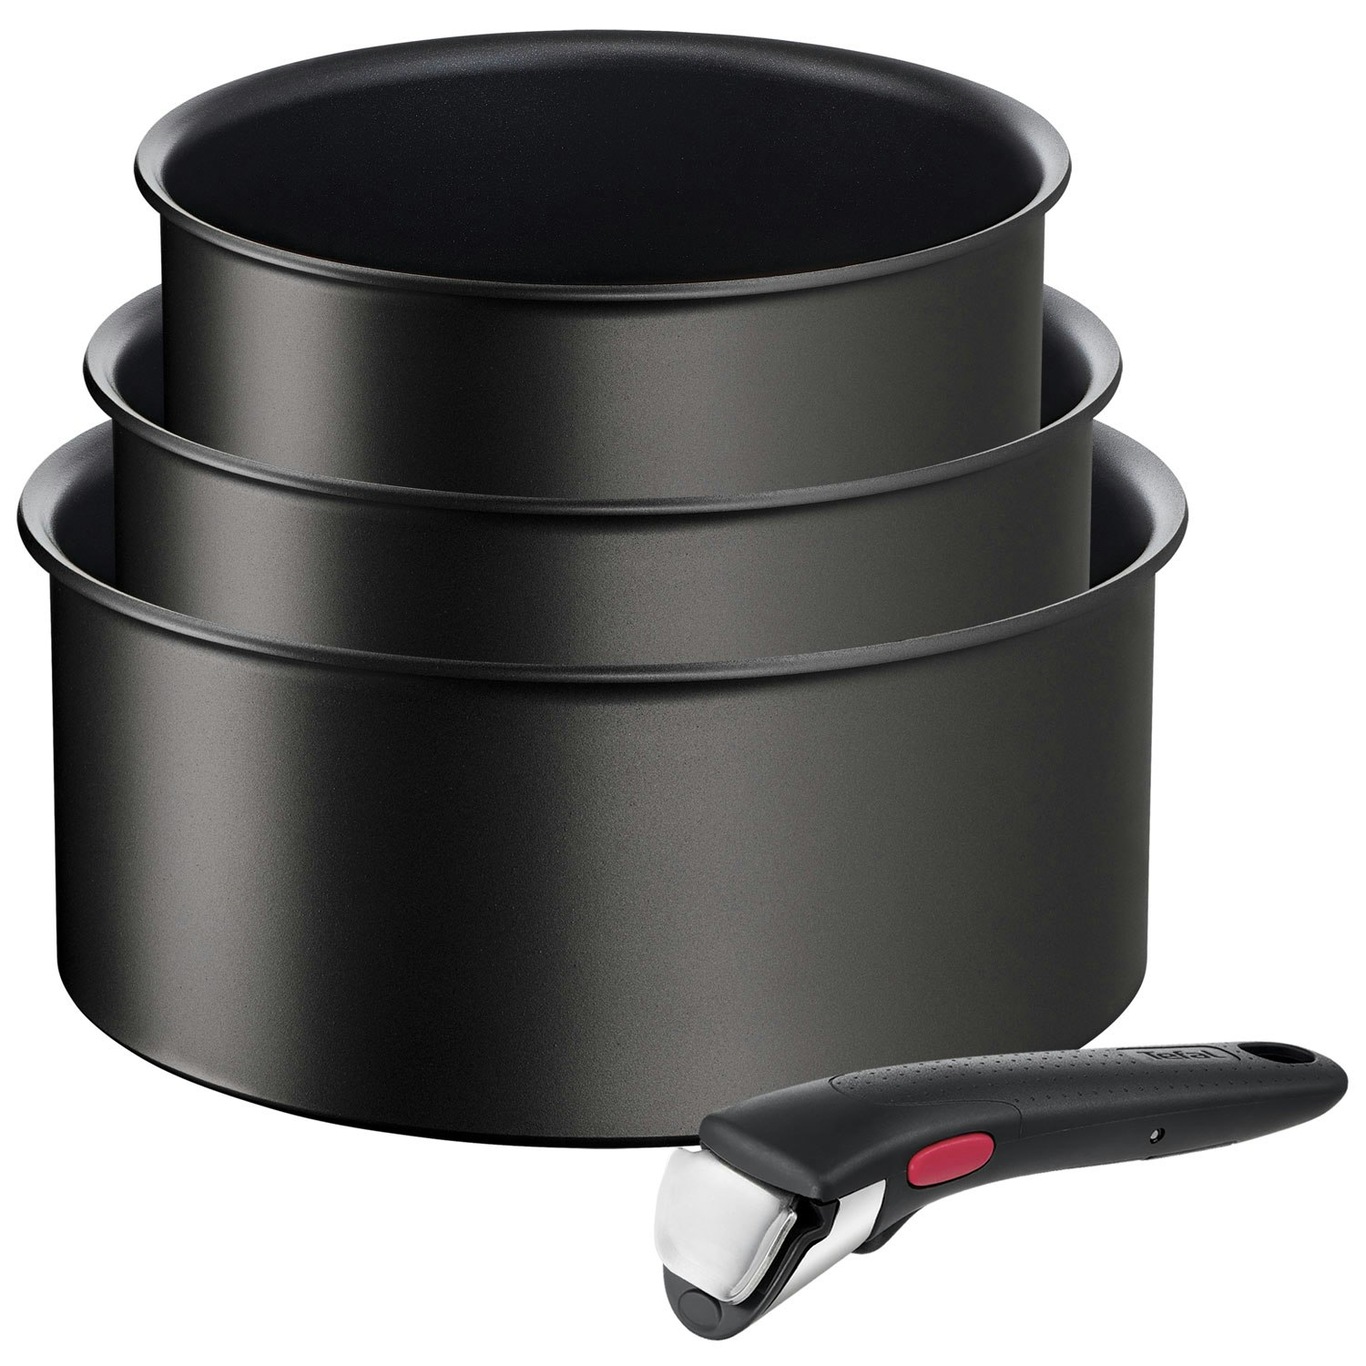 T-fal Ingenio Detachable Handle 1 Piece Cookware, Pots and Pans Black